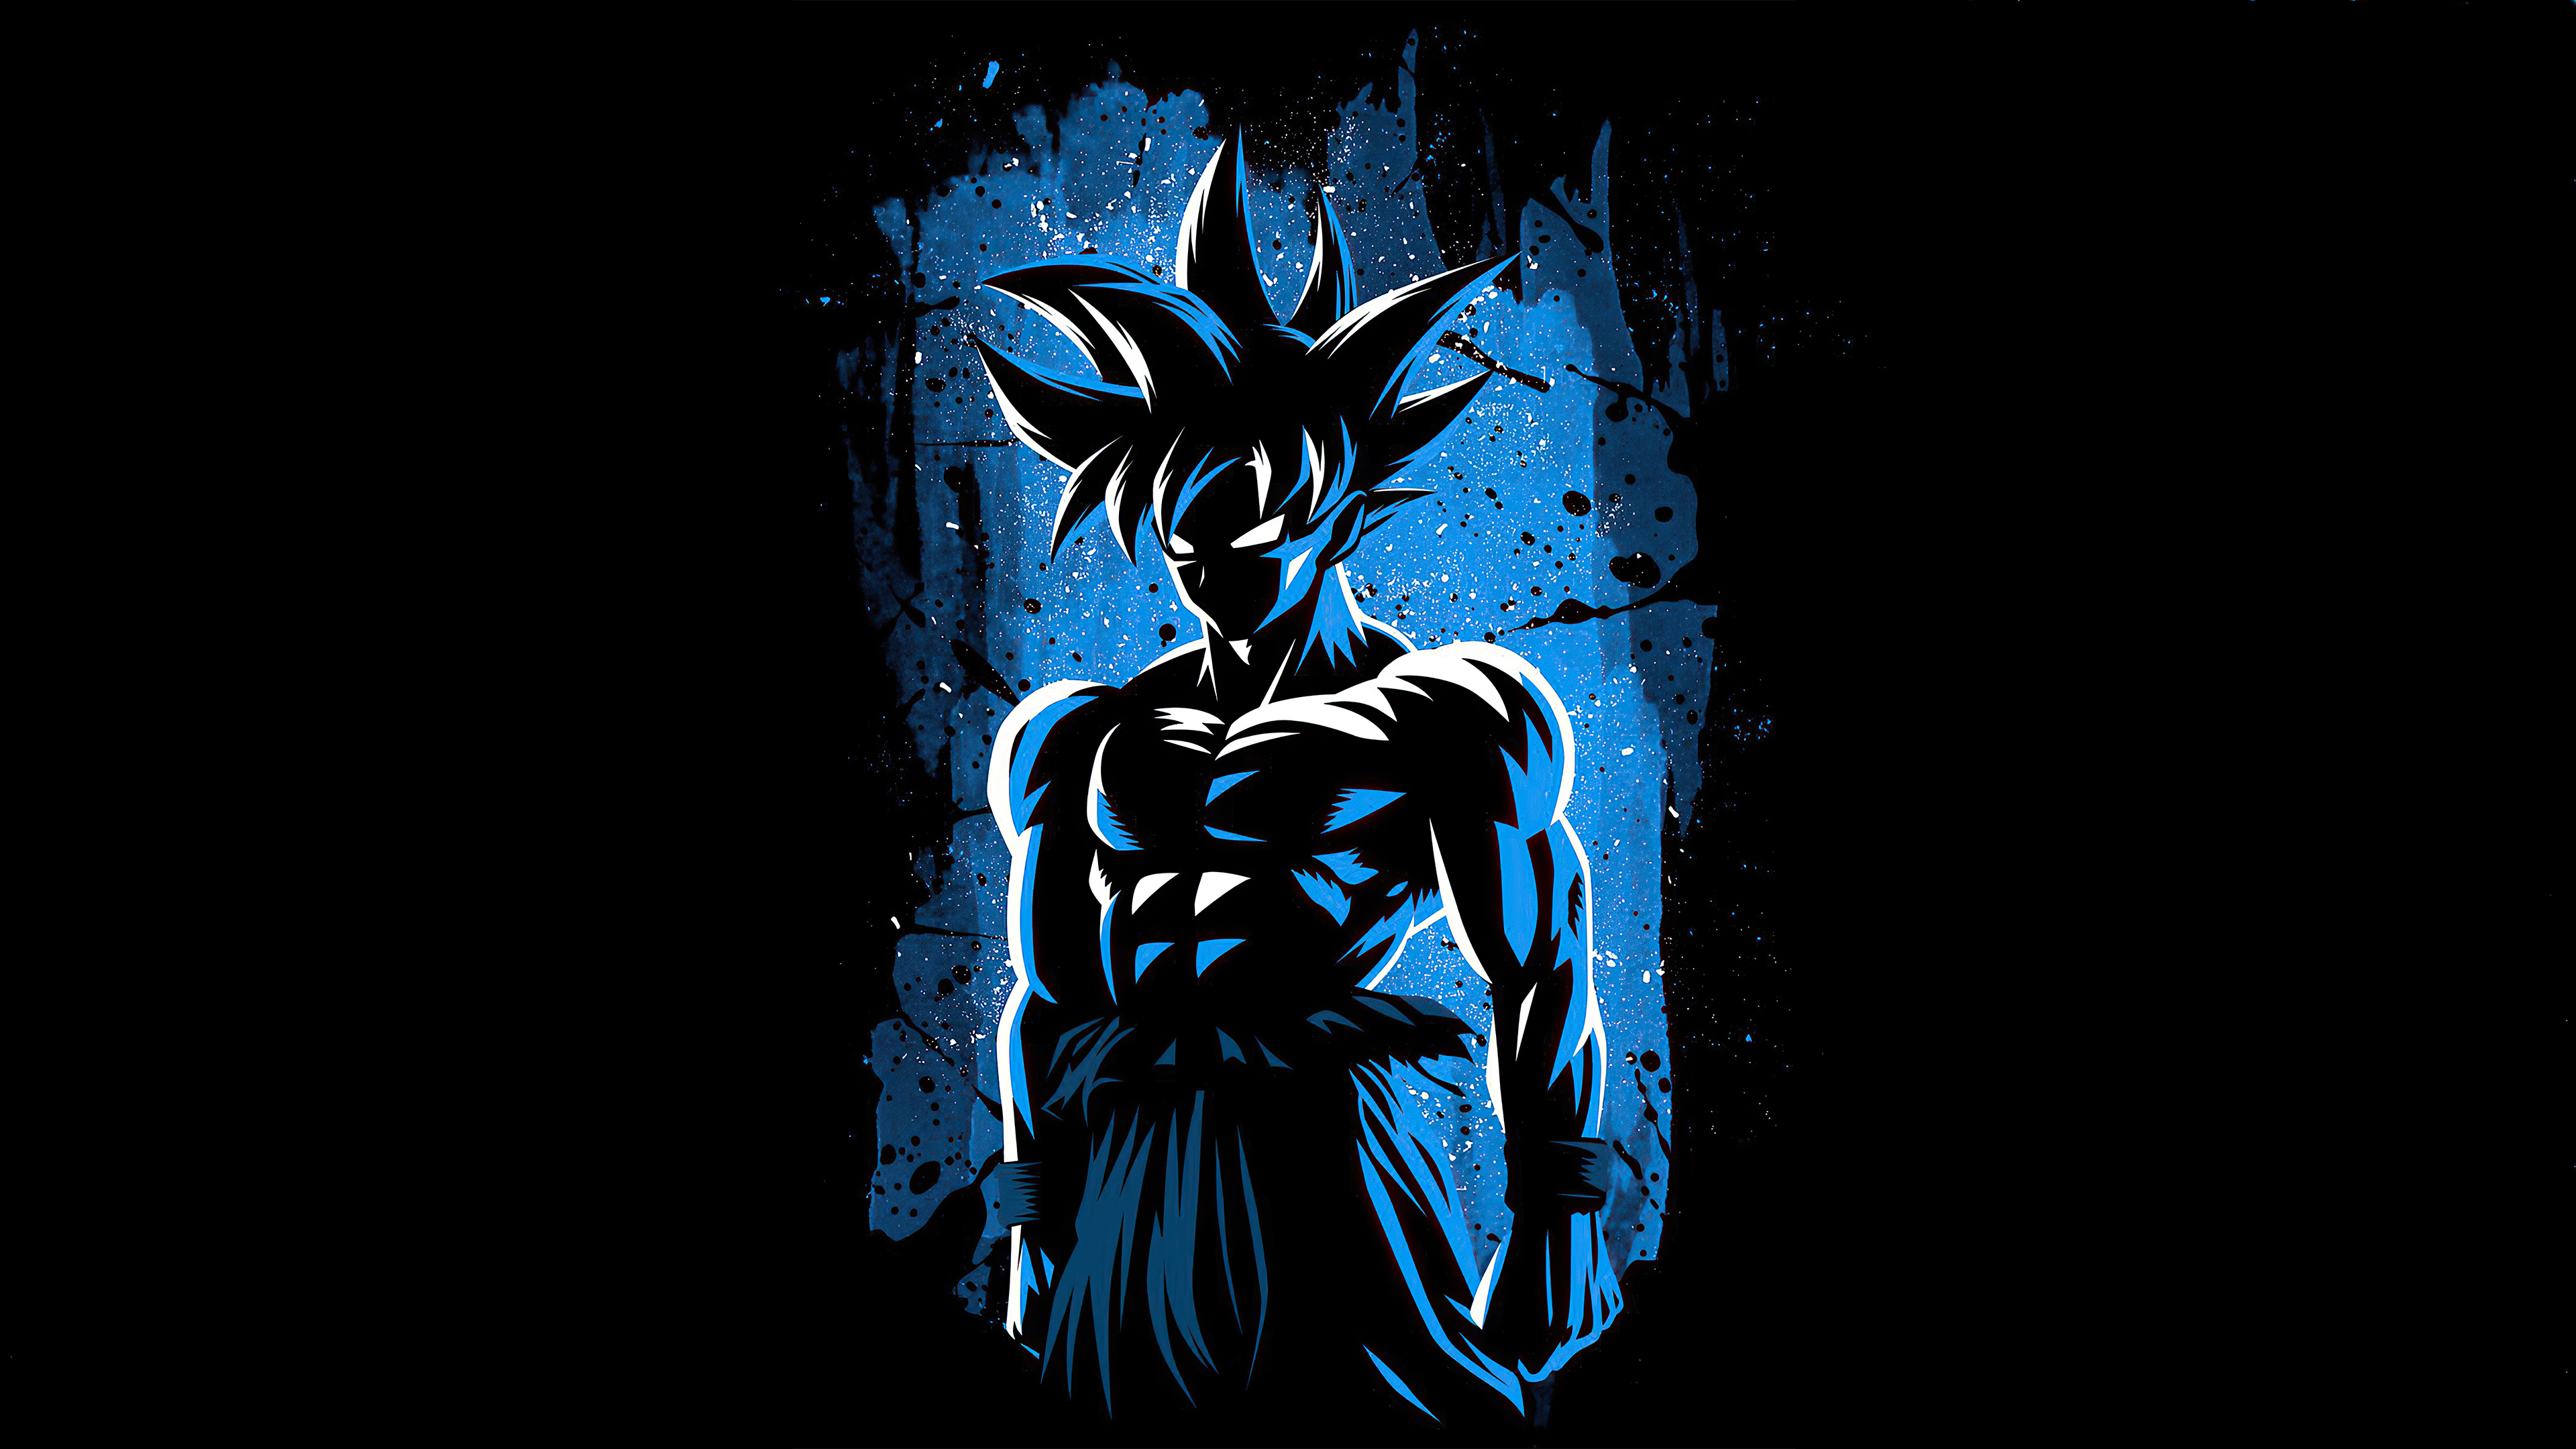 Aesthetic Black Goku Wallpaper